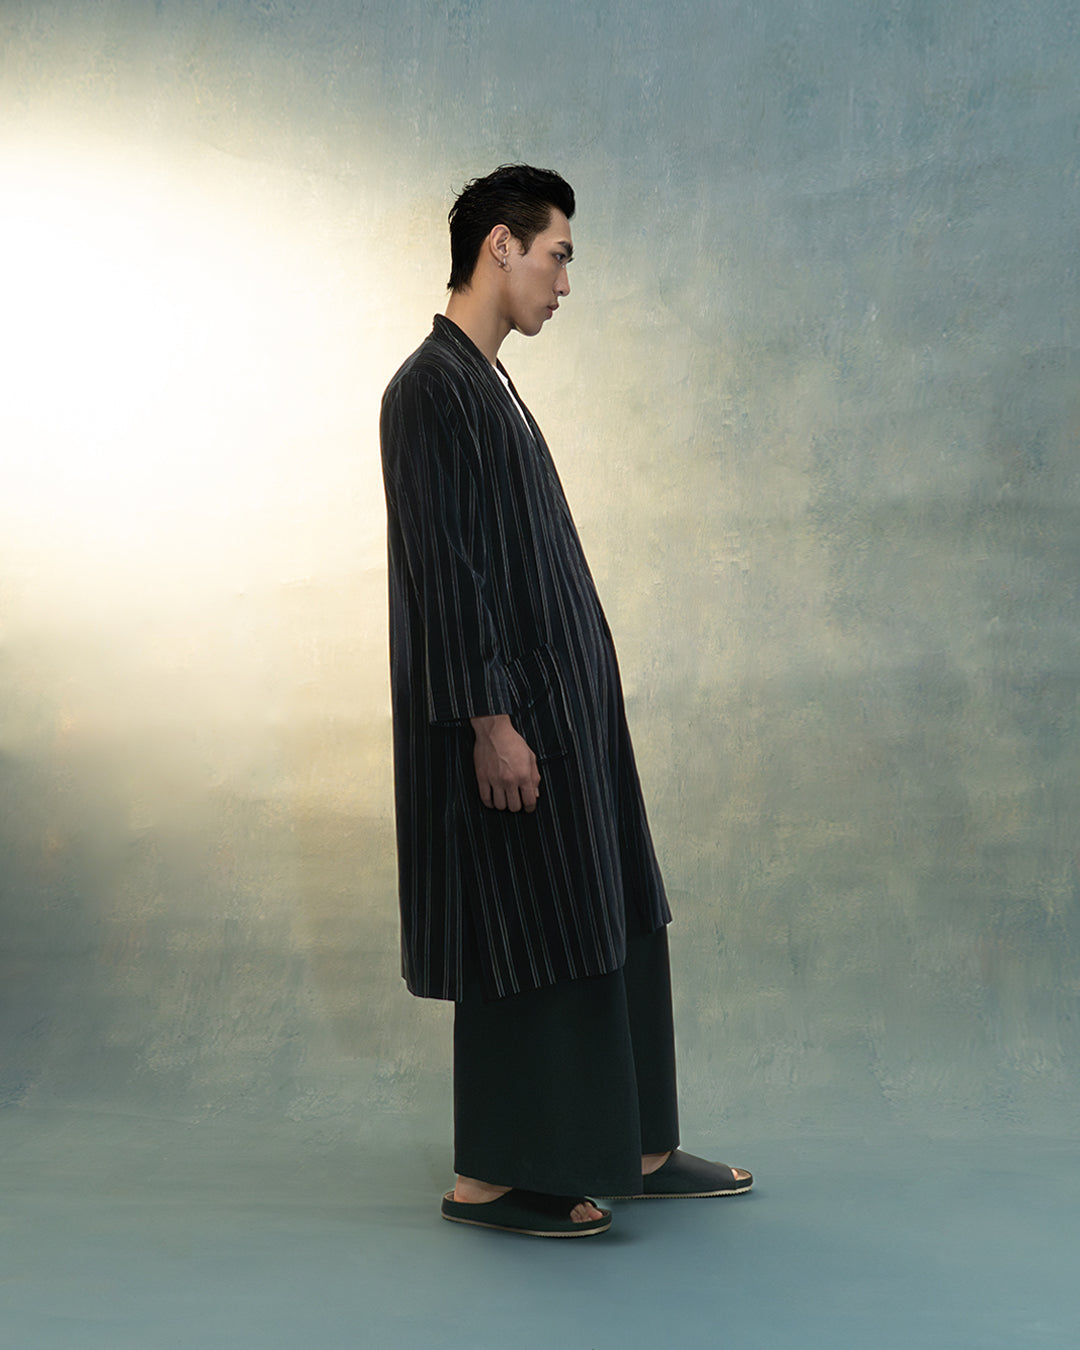 Kimono robe in black stripes velvet